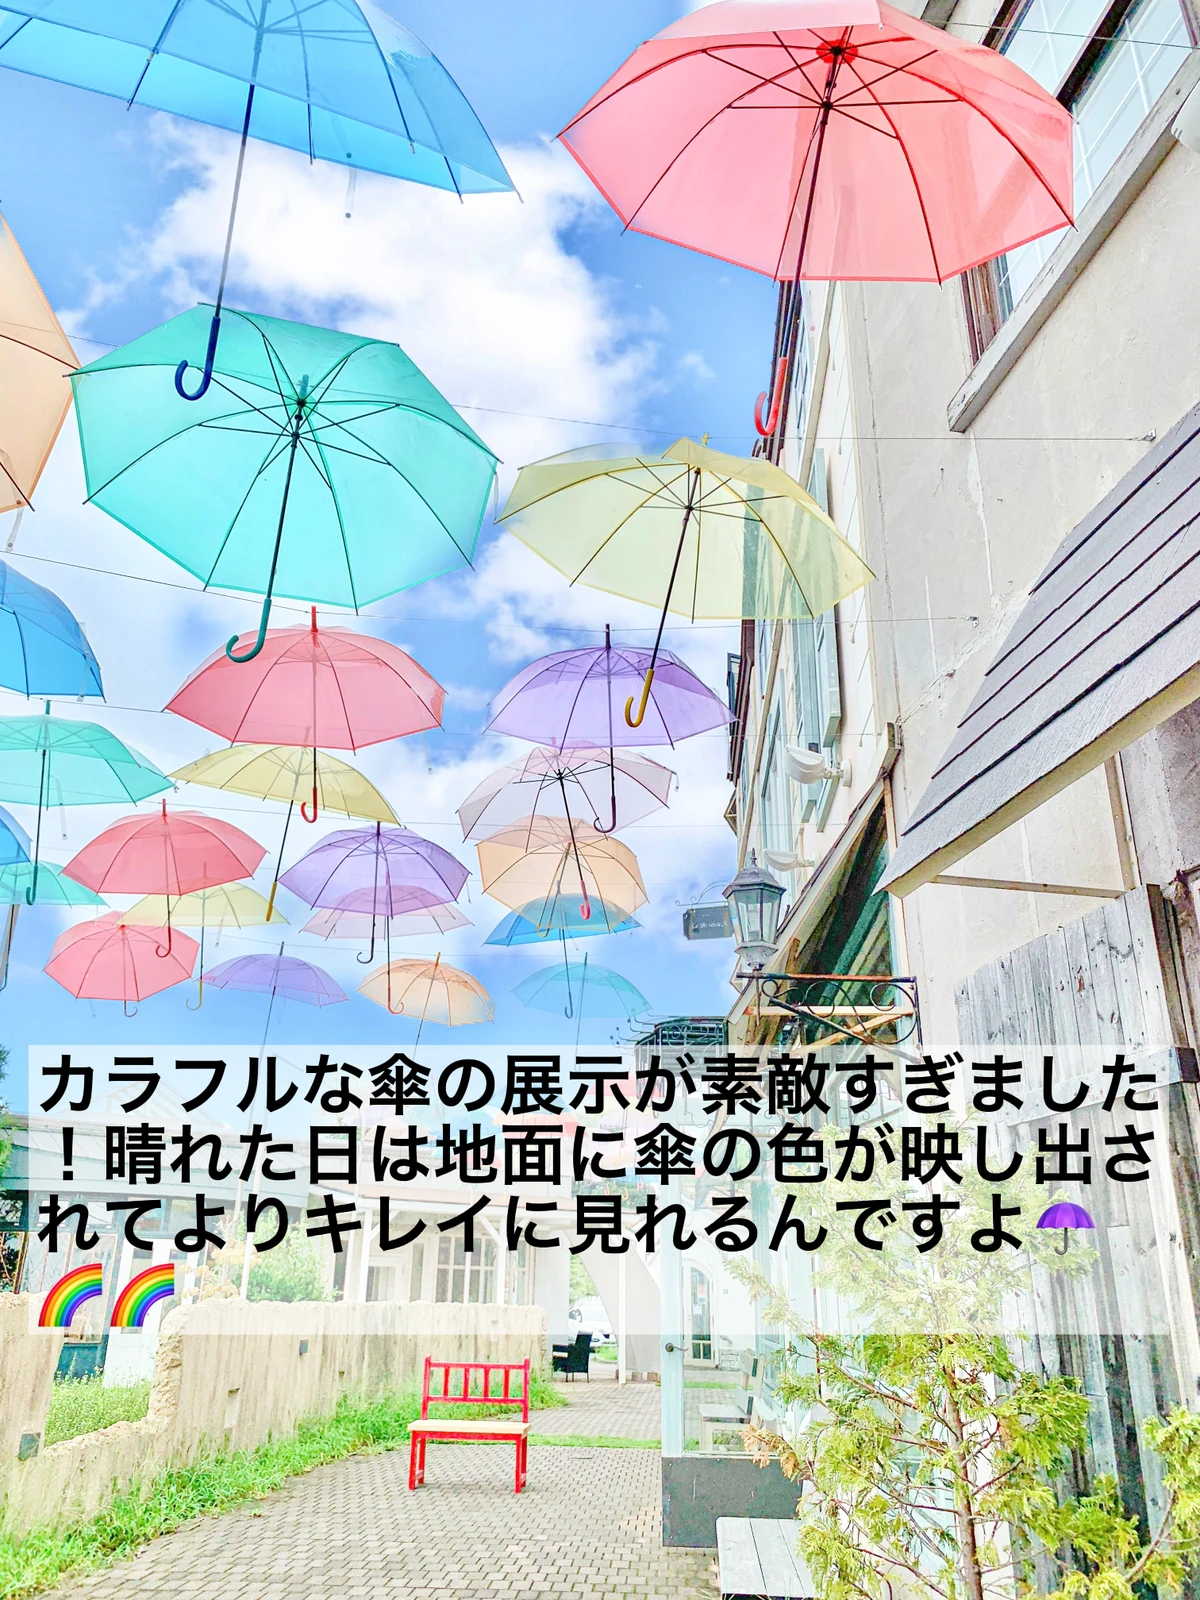 【 茨城/水戸 】カラフルな傘が彩る/茨城フォトスポットの画像 (2枚目)